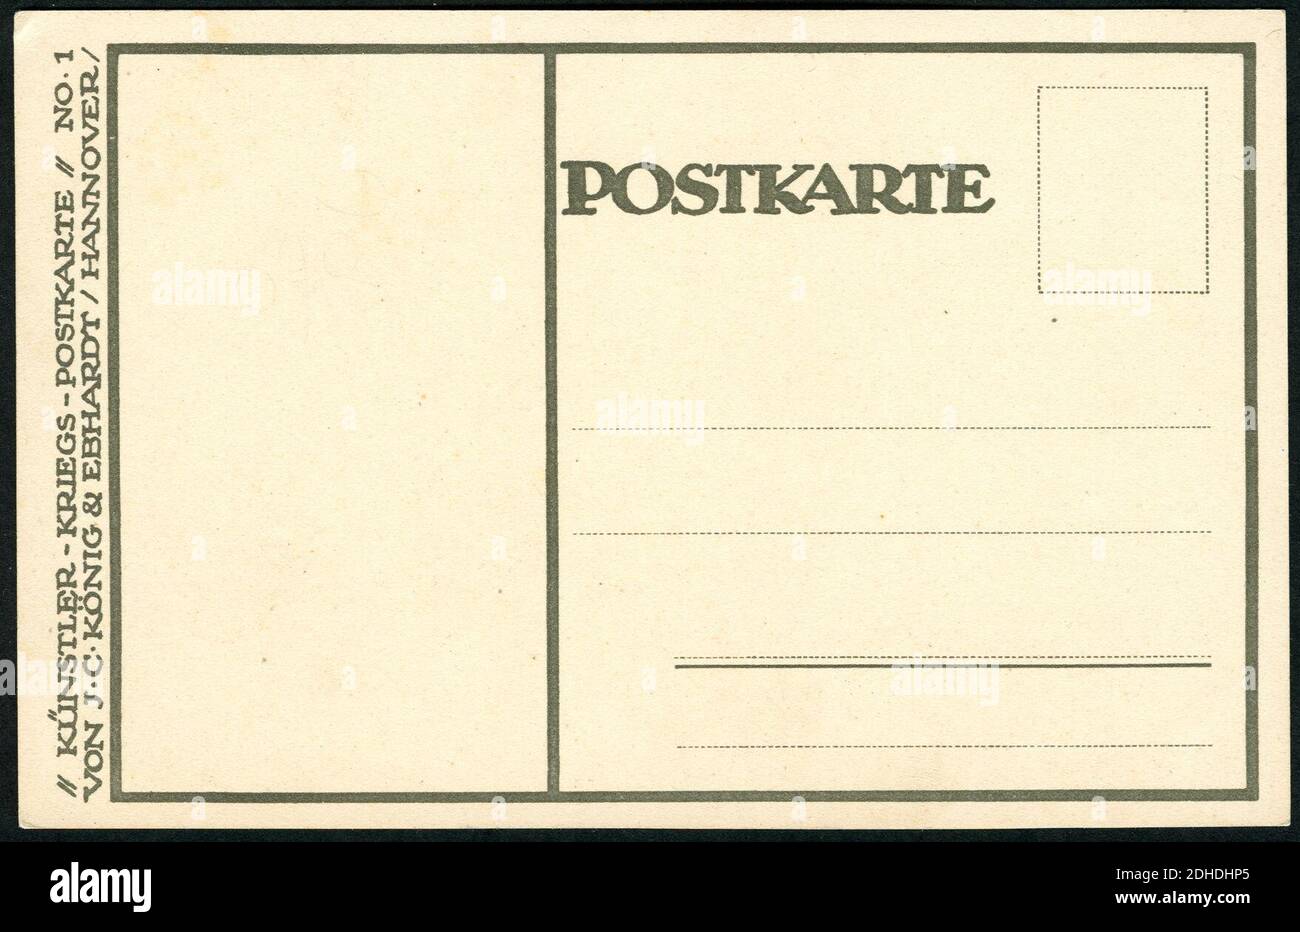 Künstler-Kriegs-Postkarte No. 1 von J. C. König & Ebhardt, Hannover, Heinz Keune, Orients Erwachen, Adressseite. Stock Photo